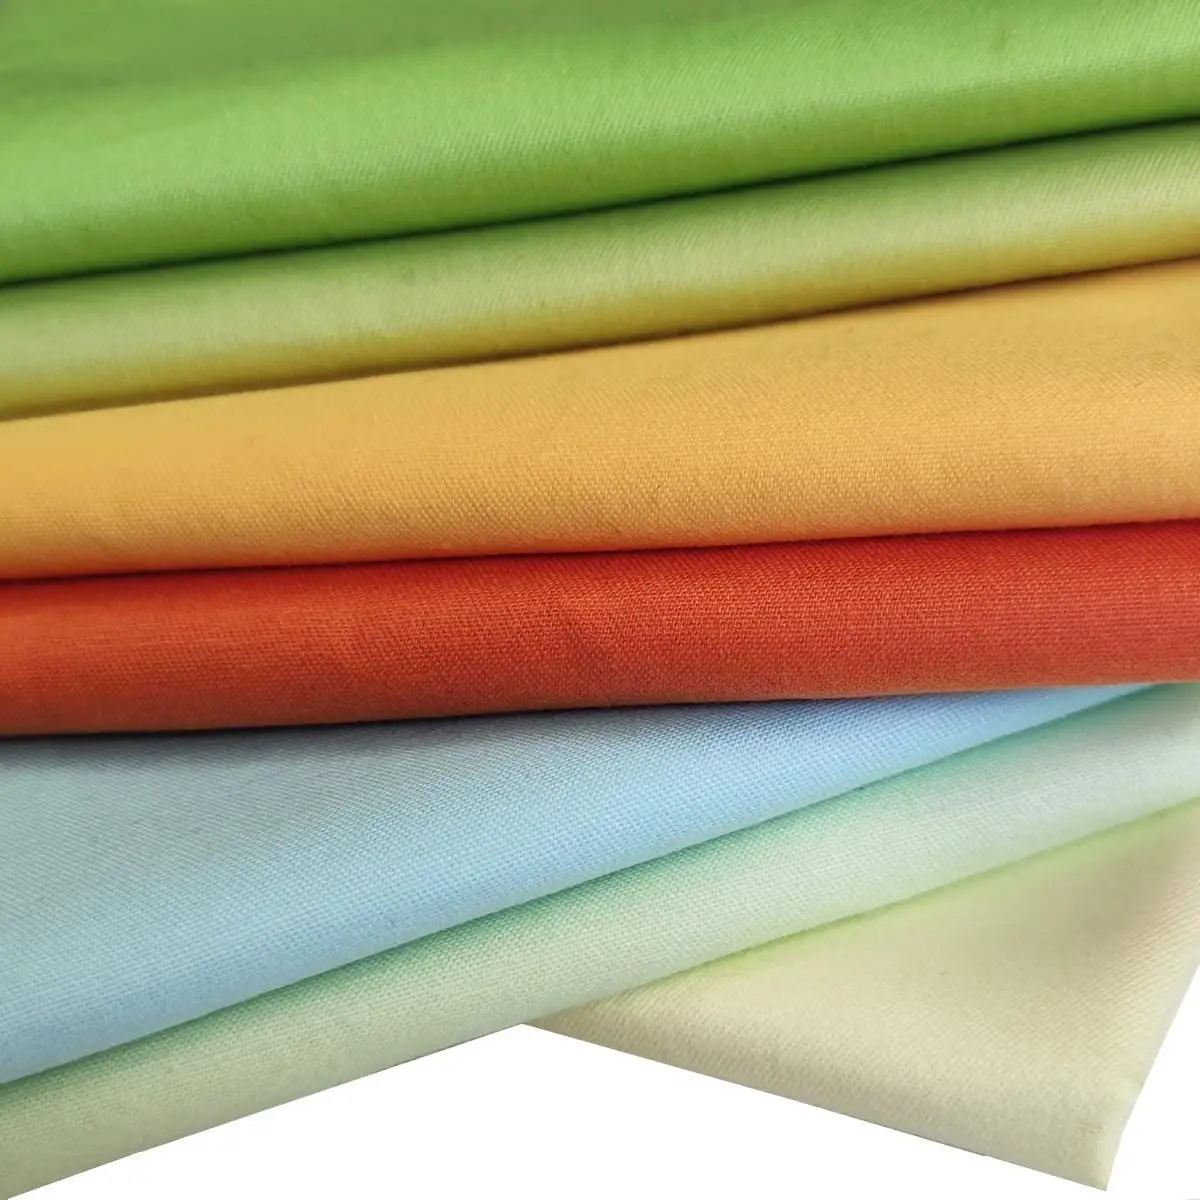 Haoyu textile vente en gros uniformes scolaires tissus pur coton léger coton organique tissu pour vêtements tissé 100% coton fab